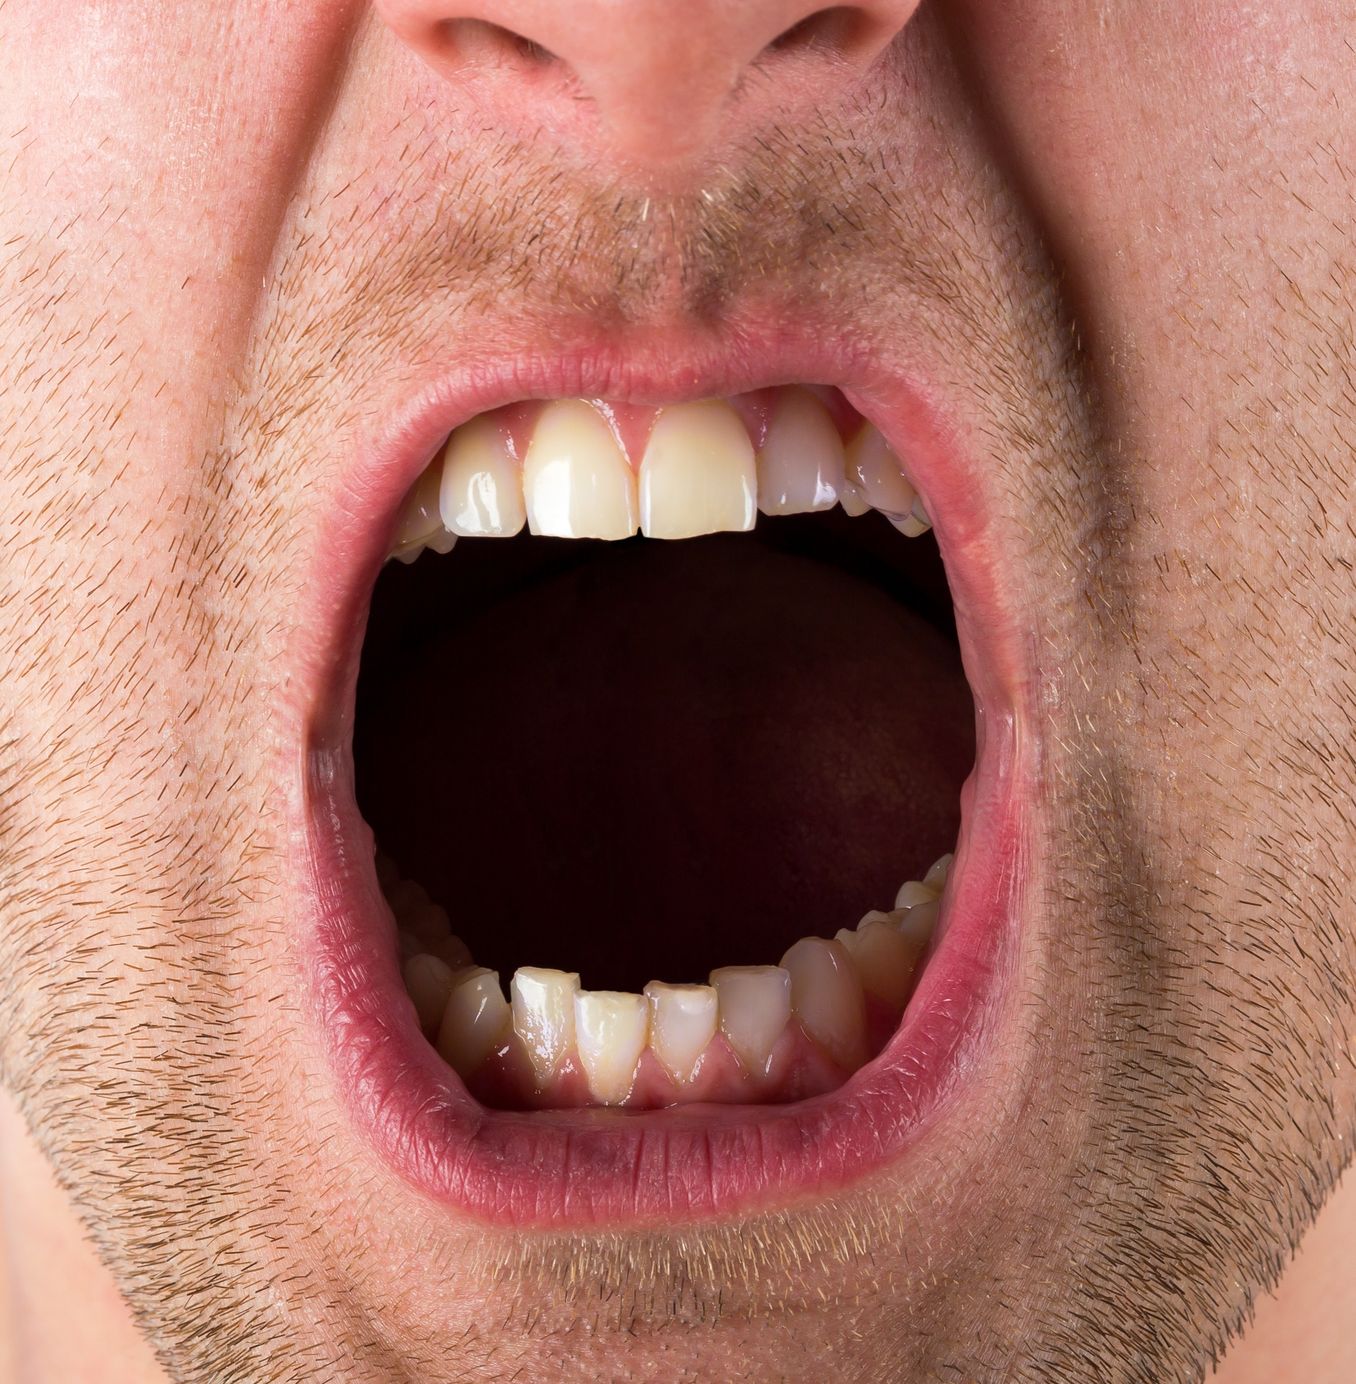 Фотка открытого рта